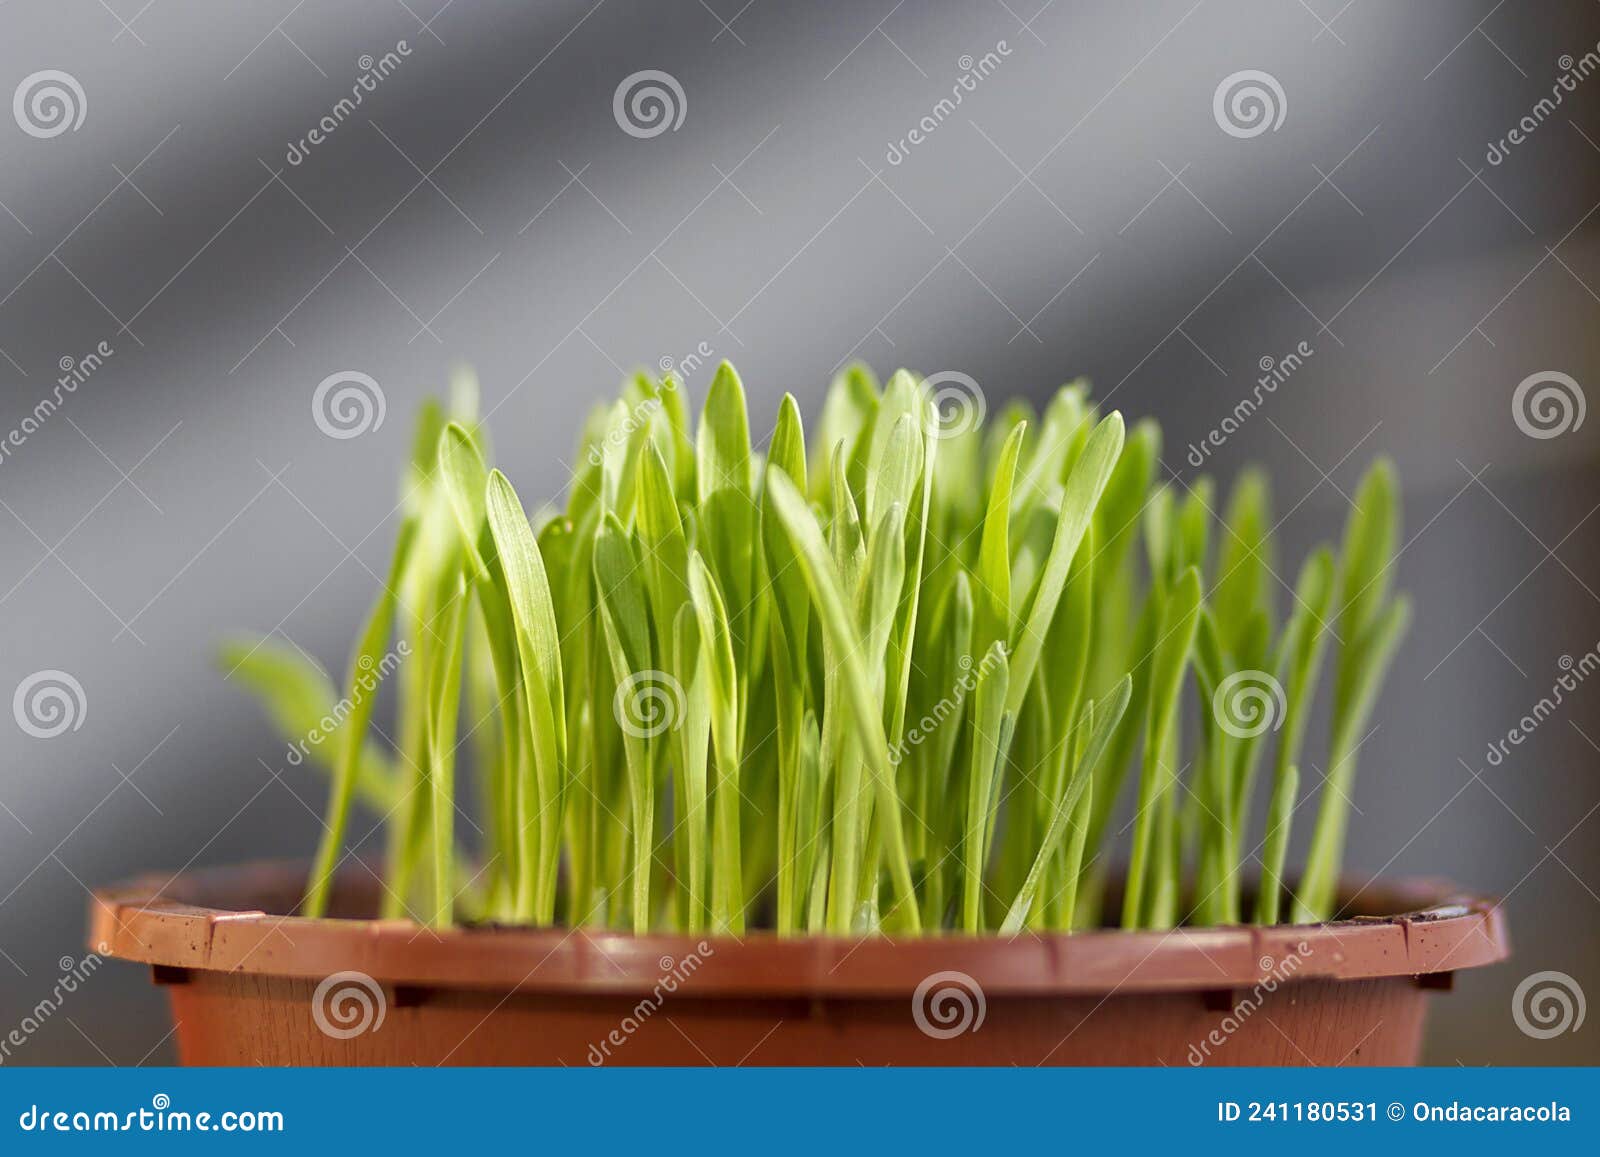 a pot of fresh cat grass